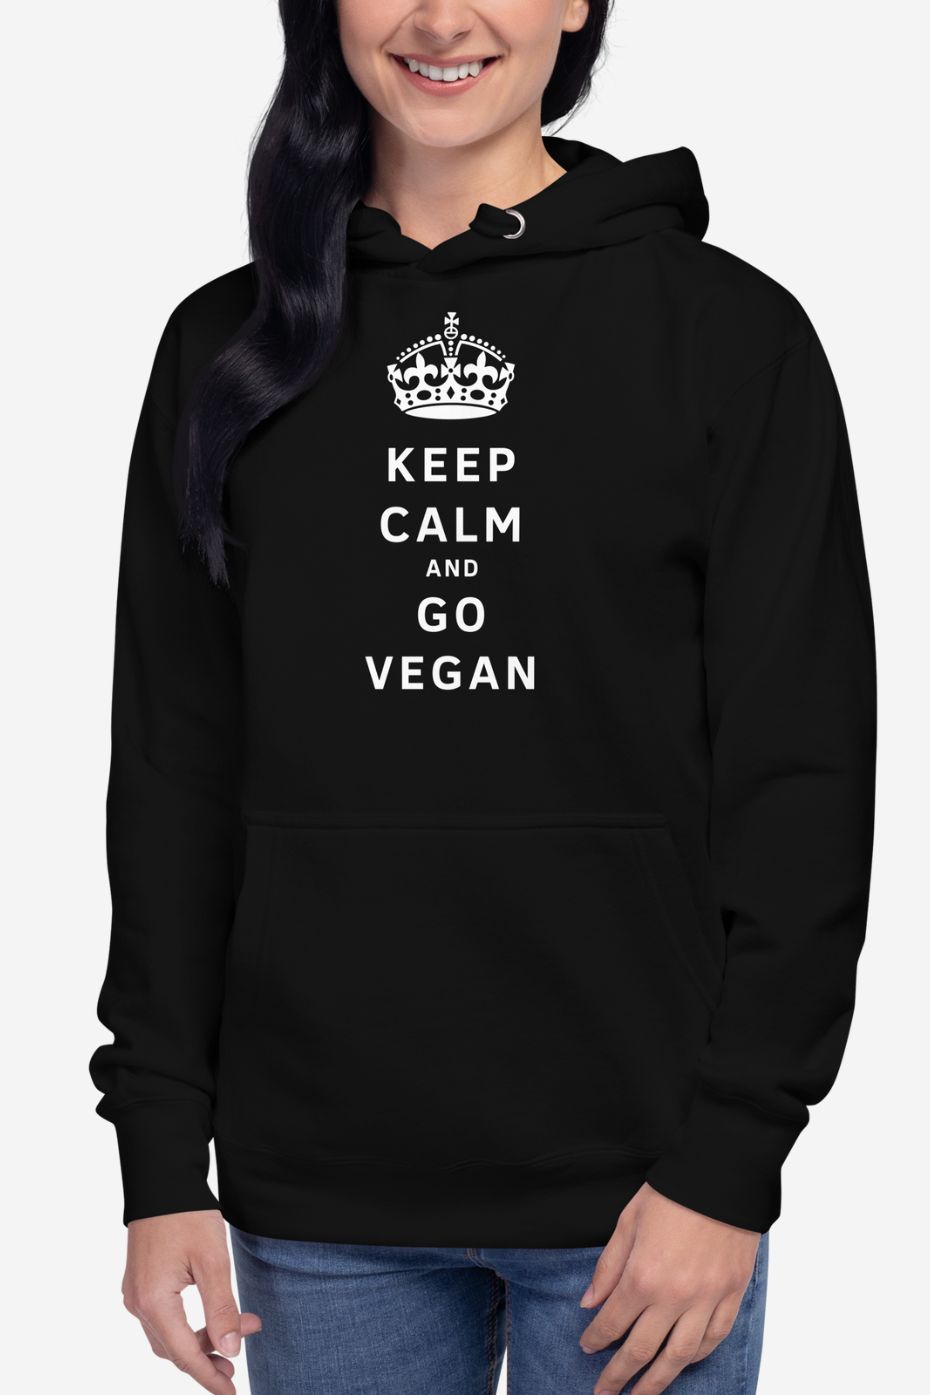 Keep Calm and Go Vegan - Unisex Premium Hoodie